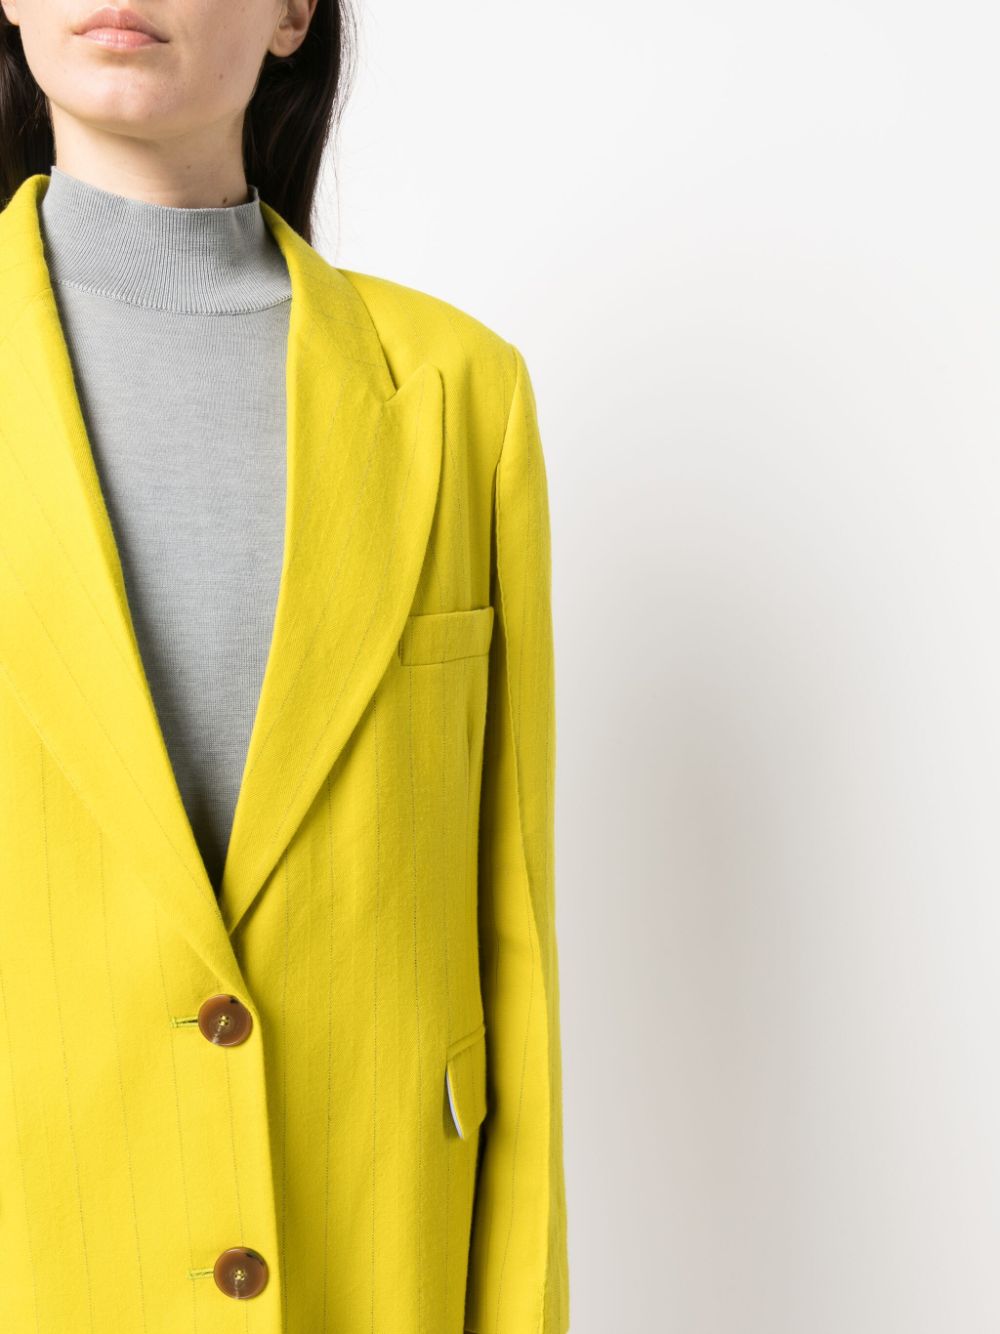 Manteau droit jaune moutarde pour femme